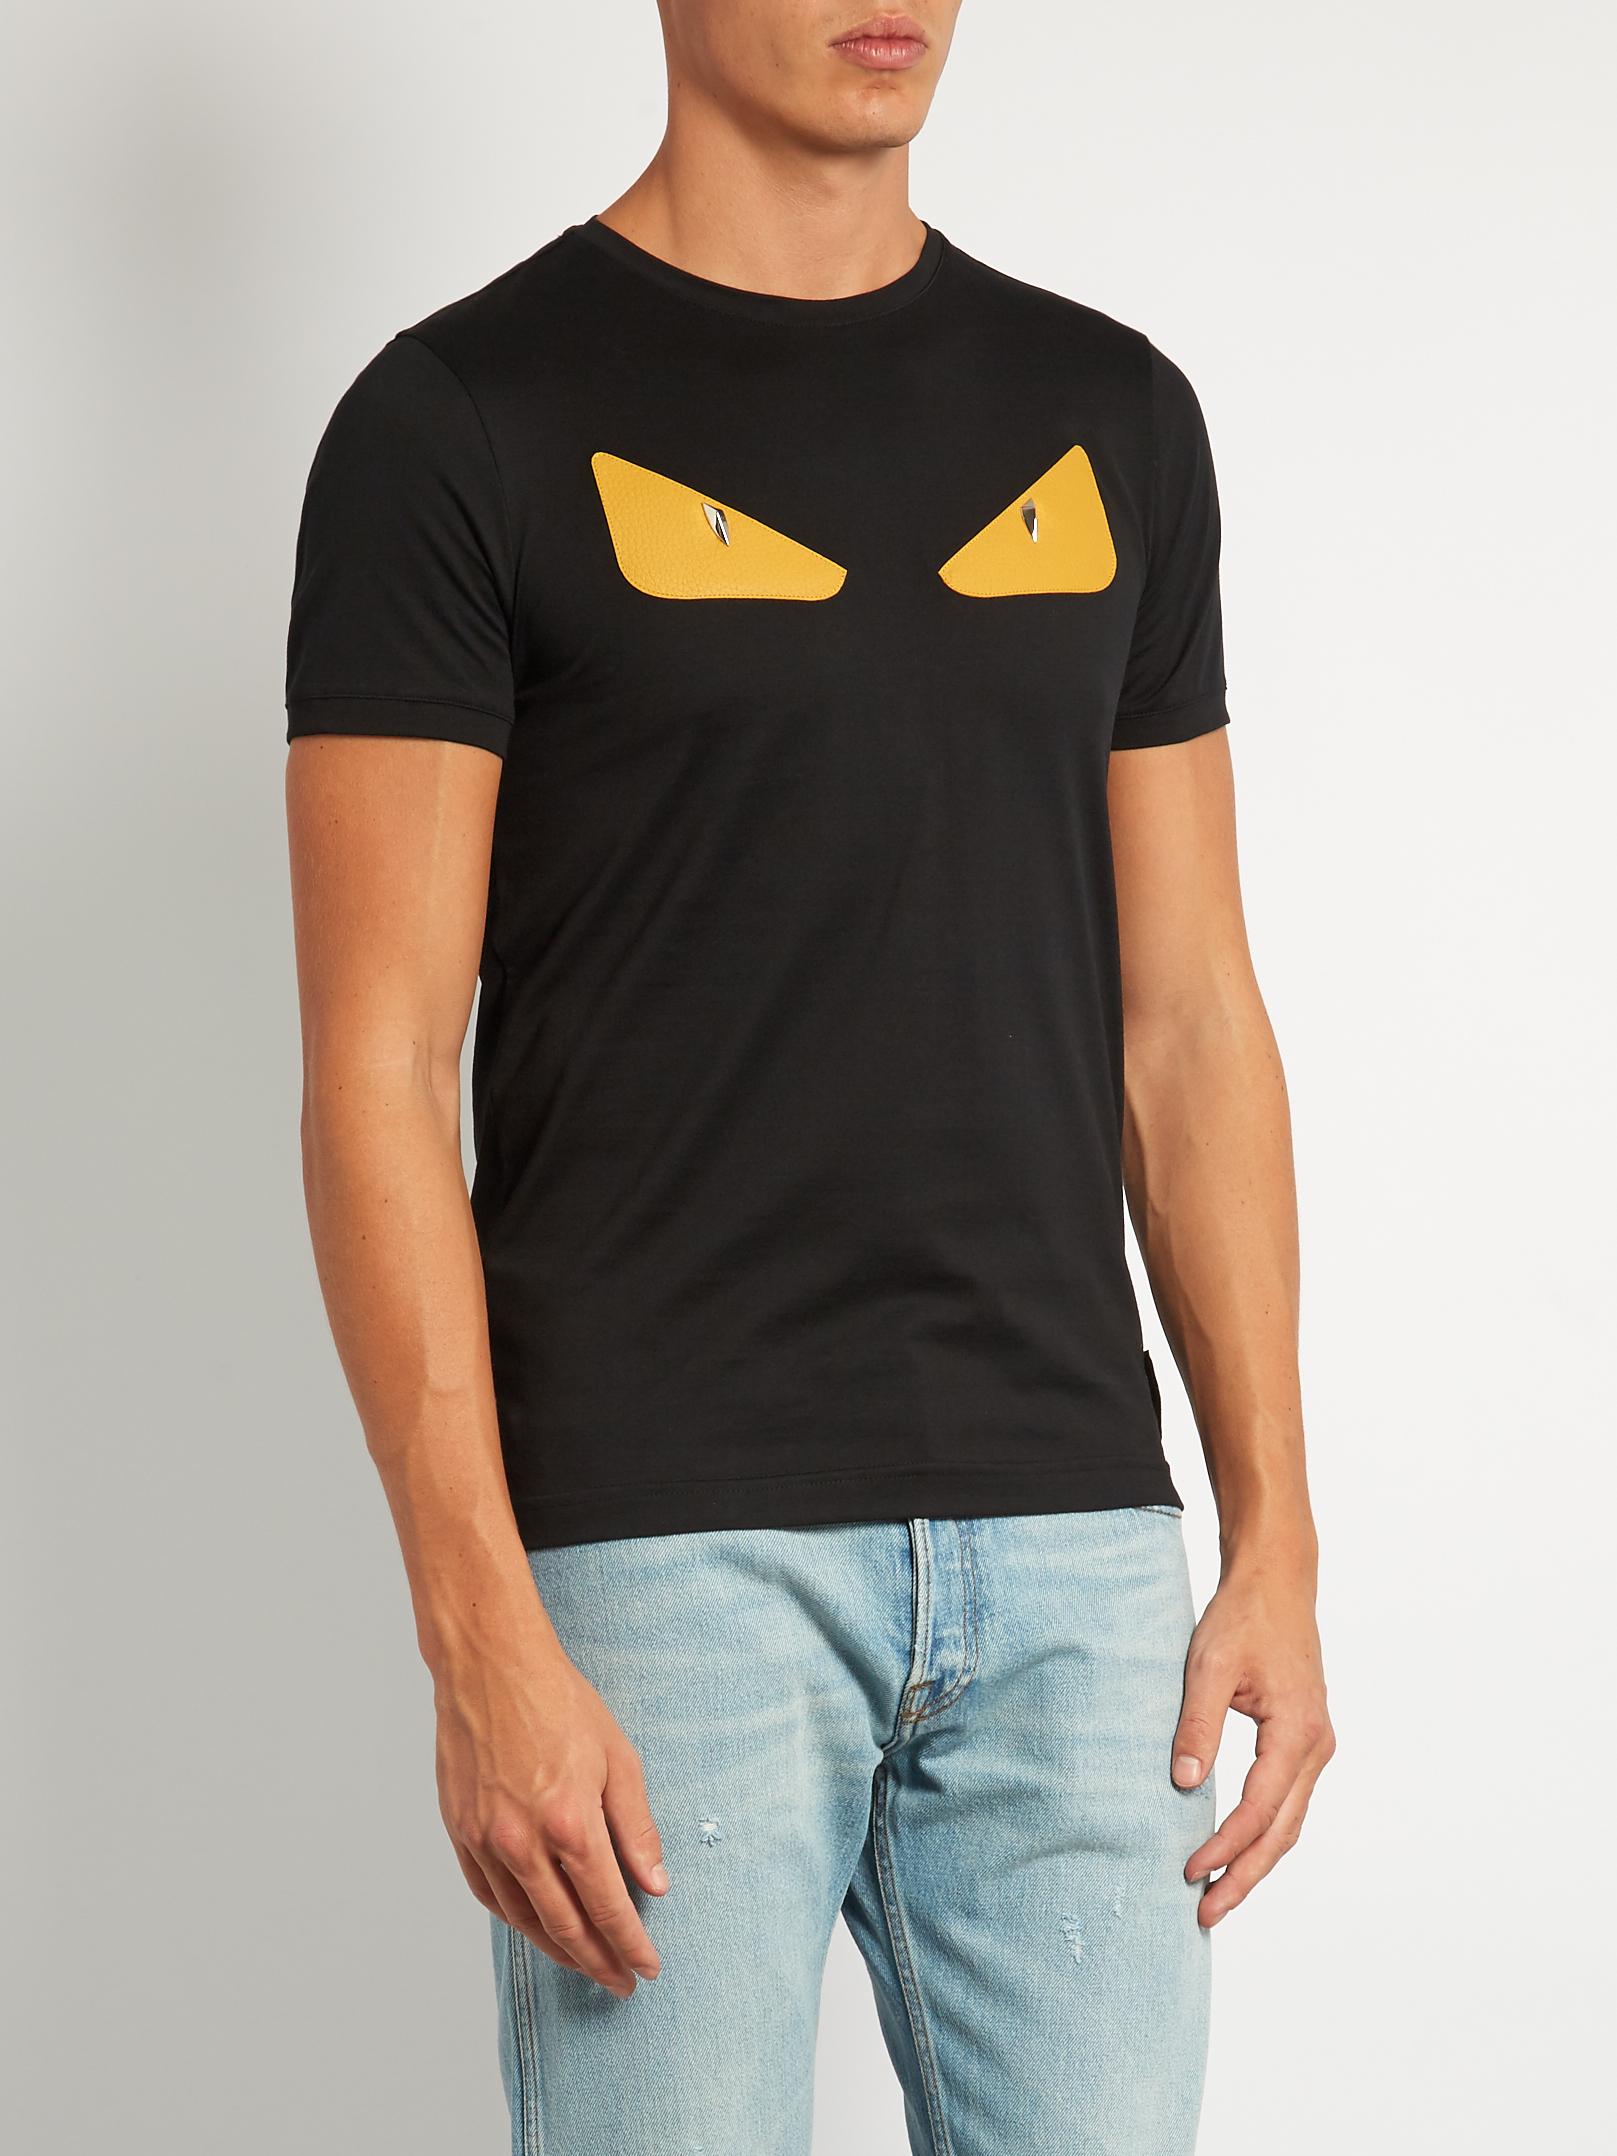 Fendi Bag Bugs-appliqué Cotton-jersey T-shirt in Black for Men - Lyst